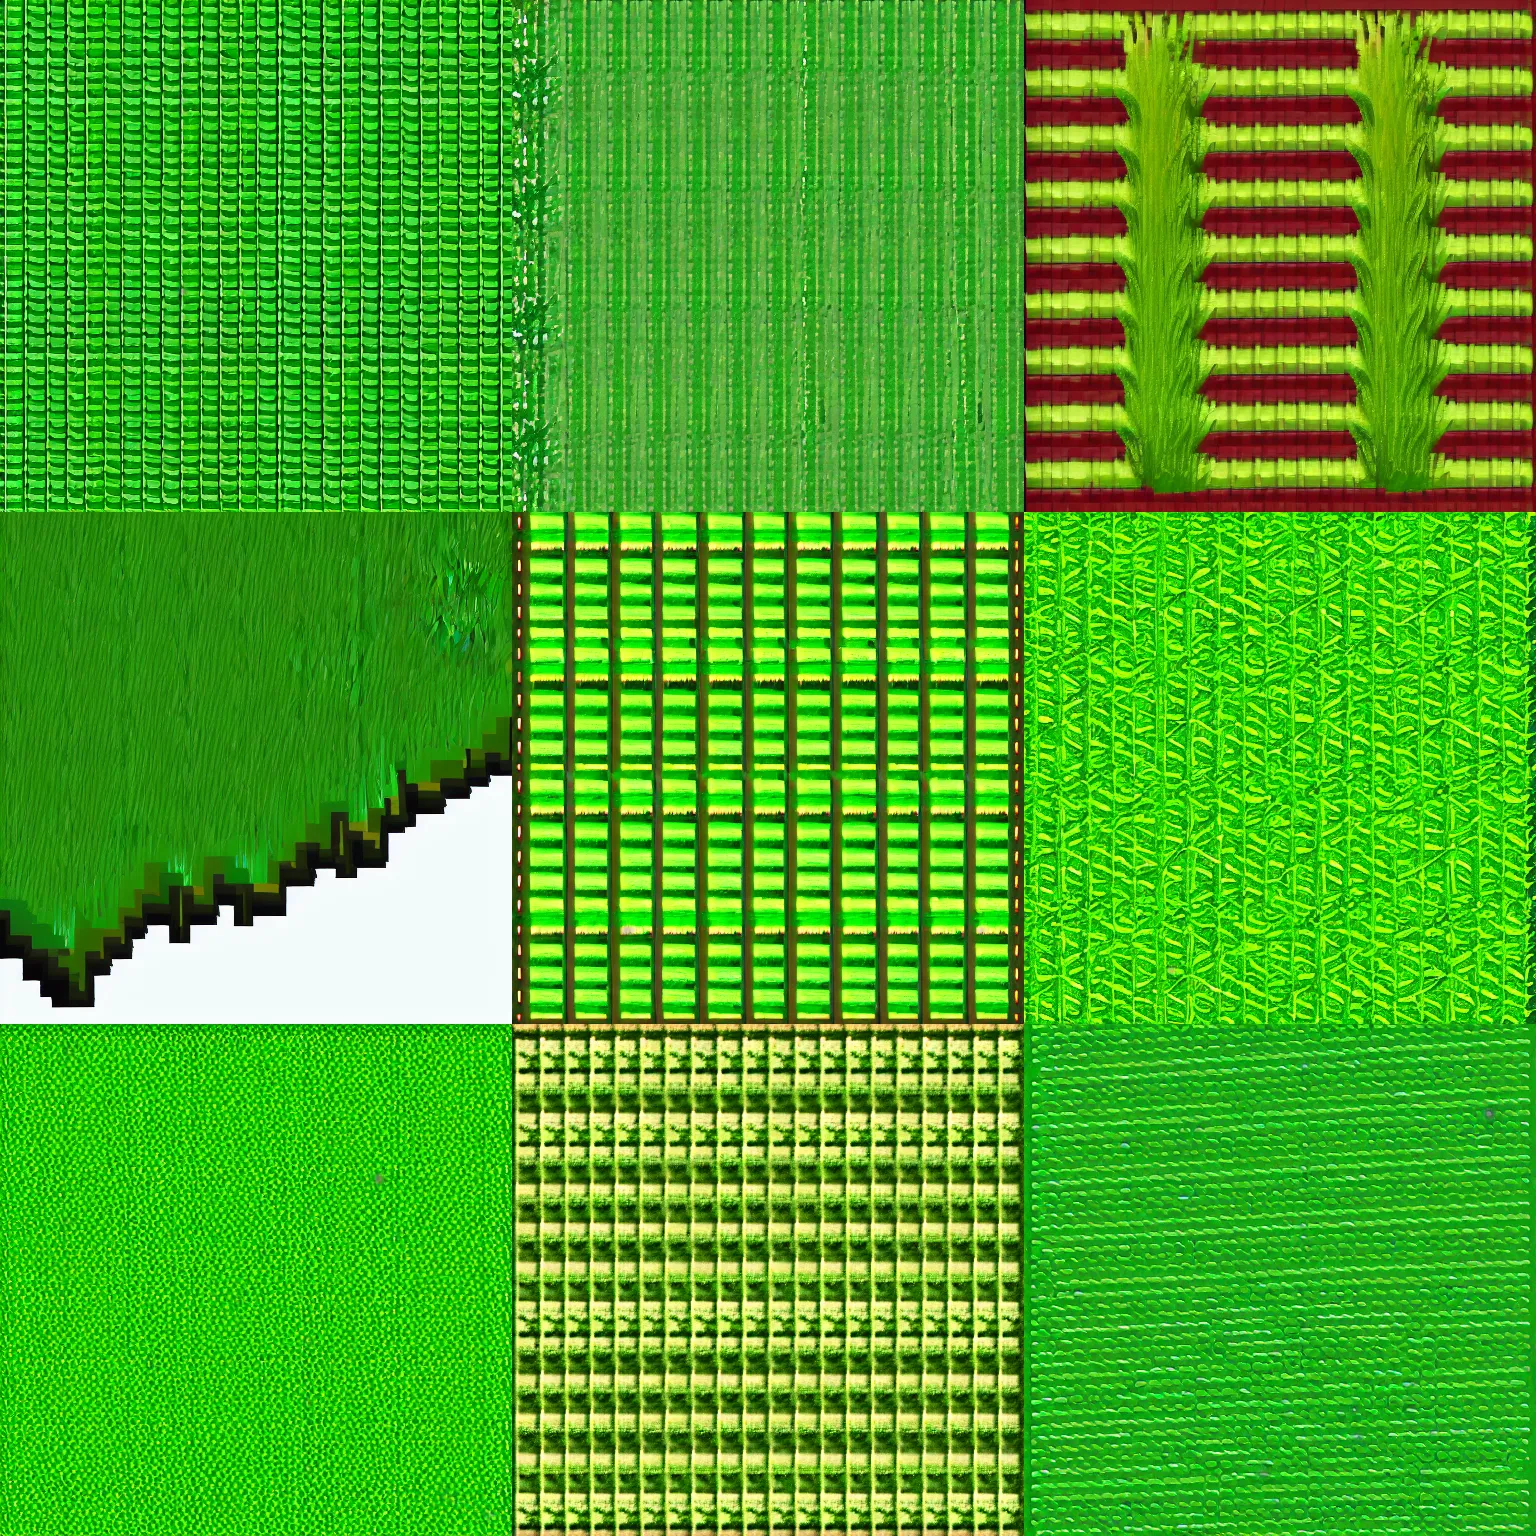 Prompt: grass texture, pixel art game asset